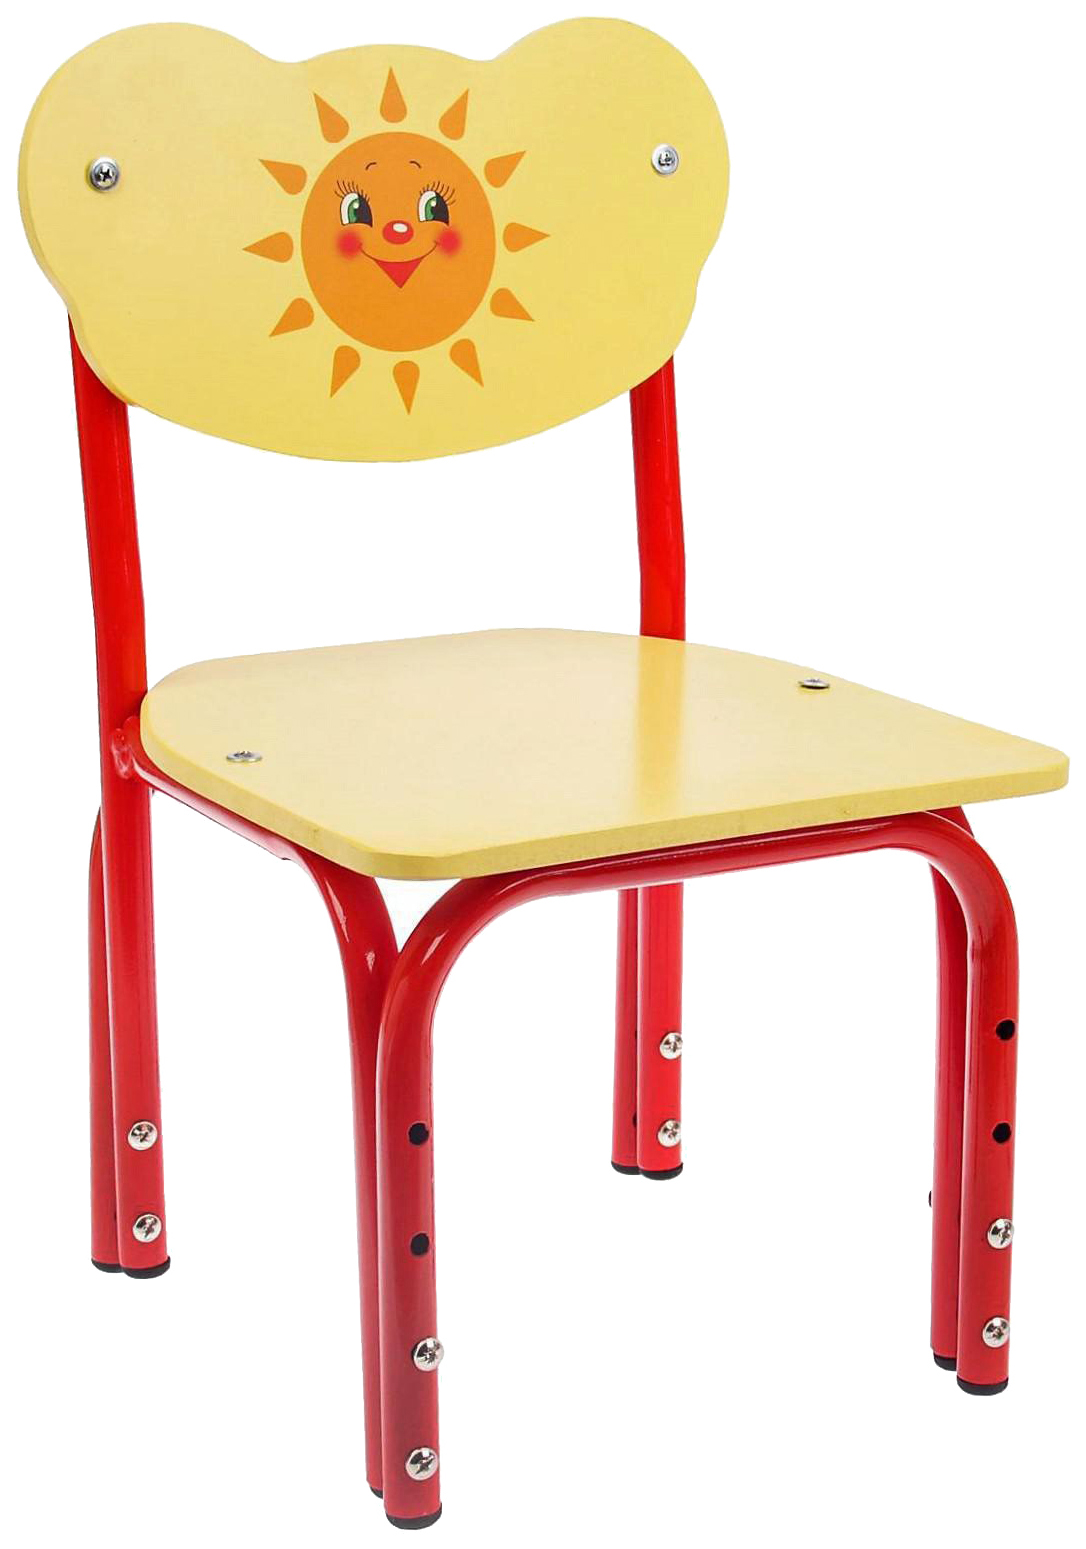 Детский стул Кузя. Солнышко, регулируемый, разборный детский стул кузя солнышко регулируемый разборный